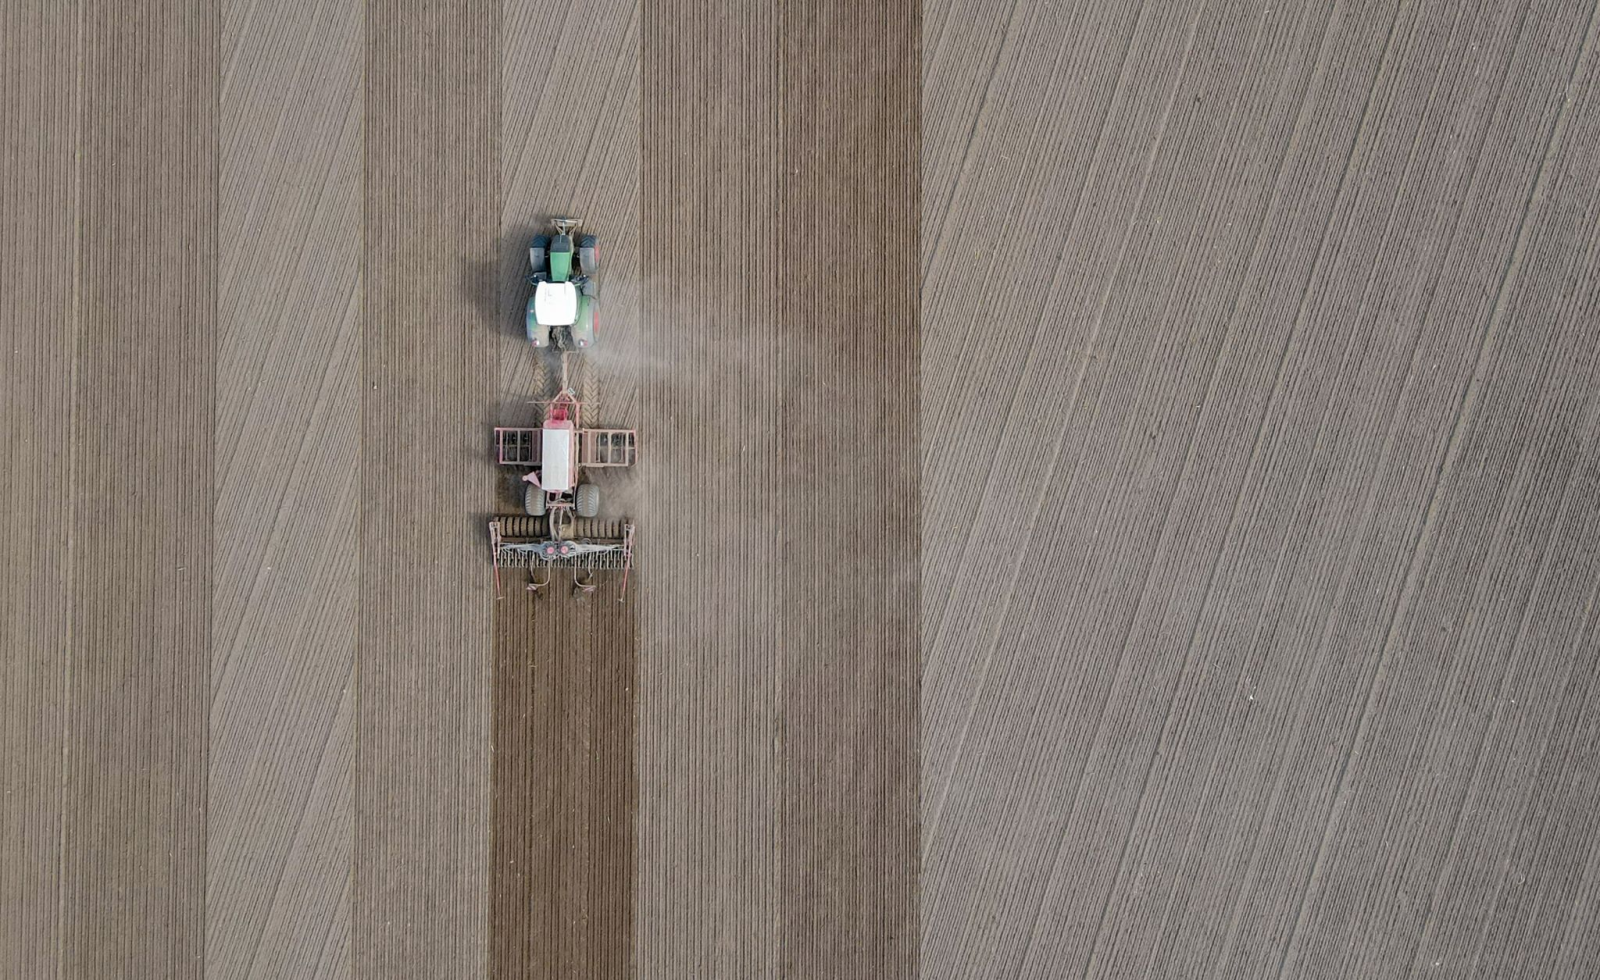 Ein Landwirt fährt mit seinem Traktor über ein Feld und bringt Saatgut in den Boden aus.